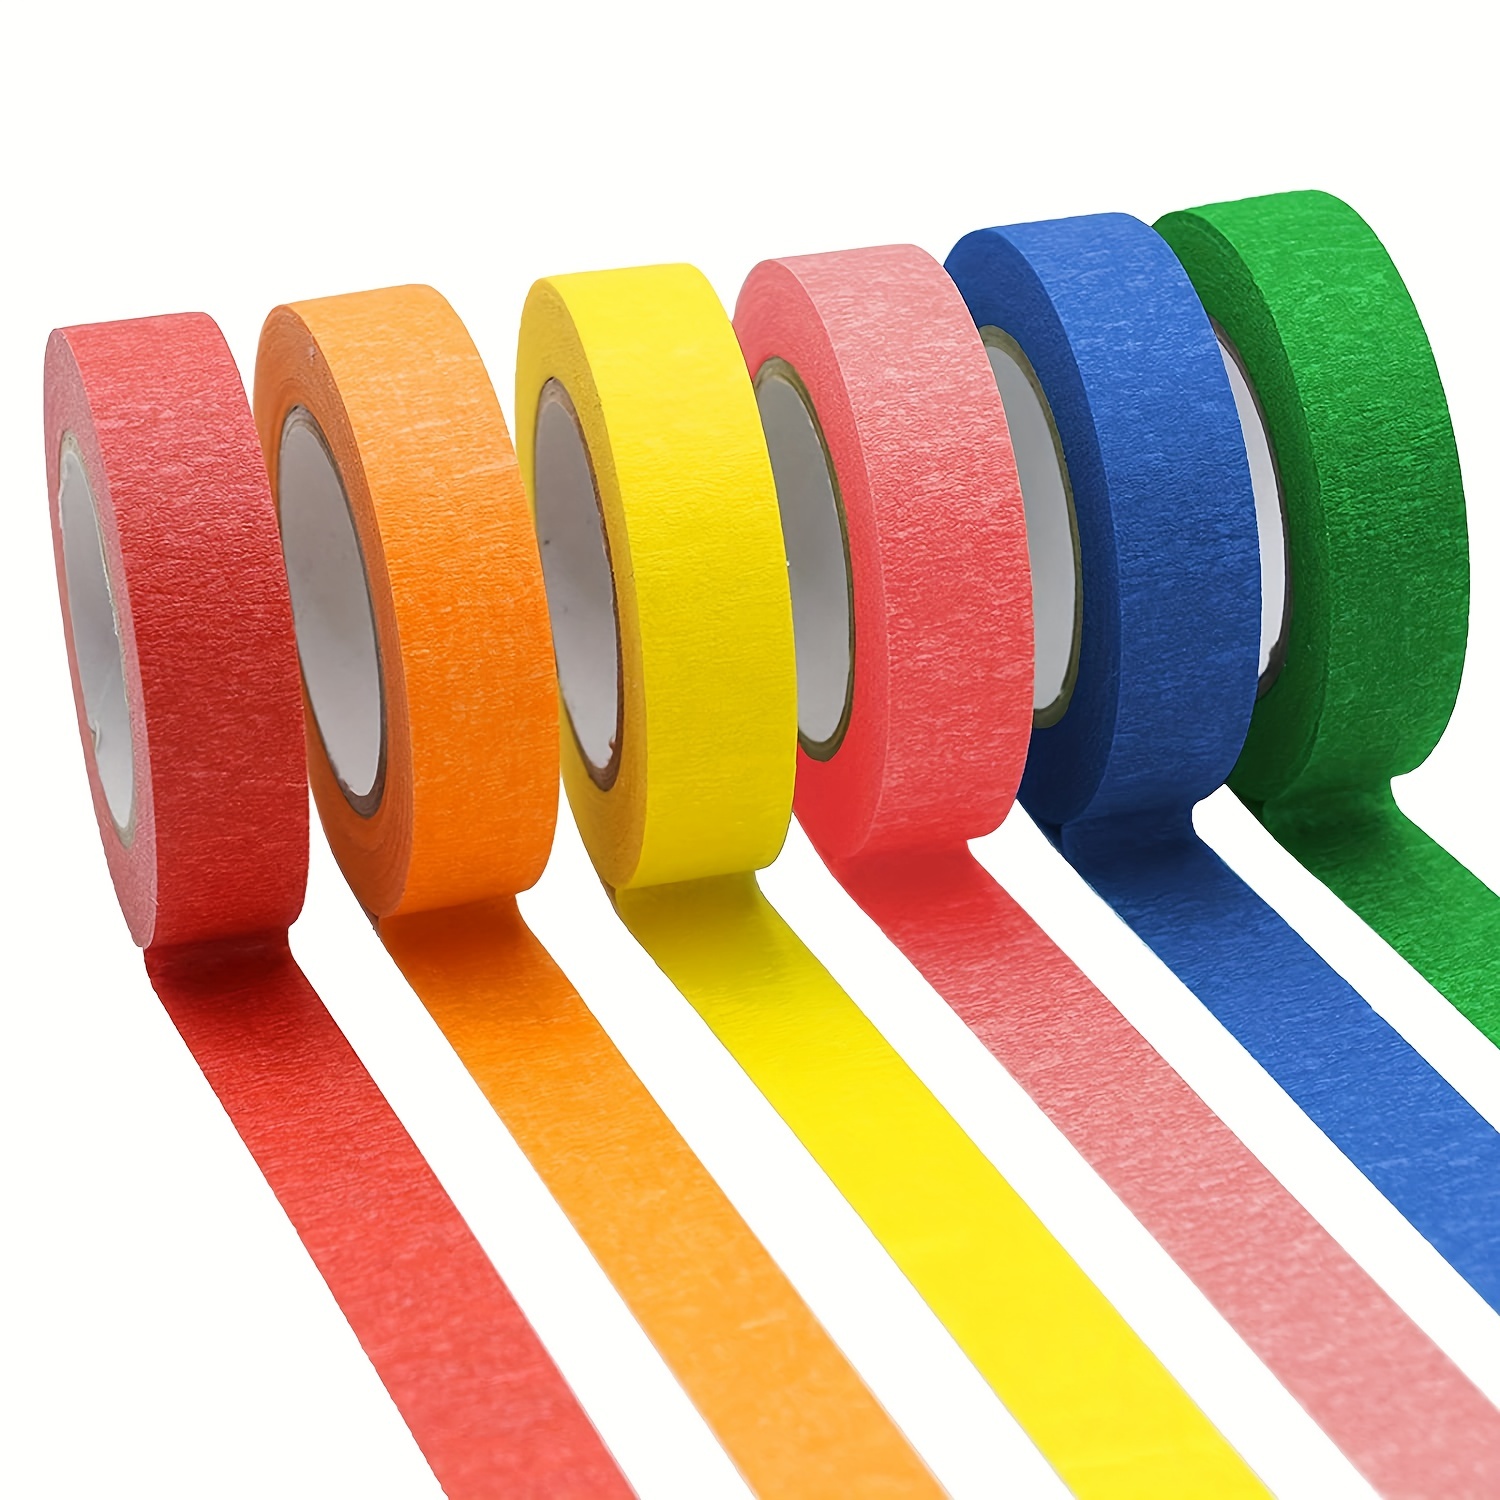 8 cintas adhesivas de colores, cinta de pintor, rollos de colores del  arcoíris, suministros de arte para niños, ideal para manualidades,  etiquetado